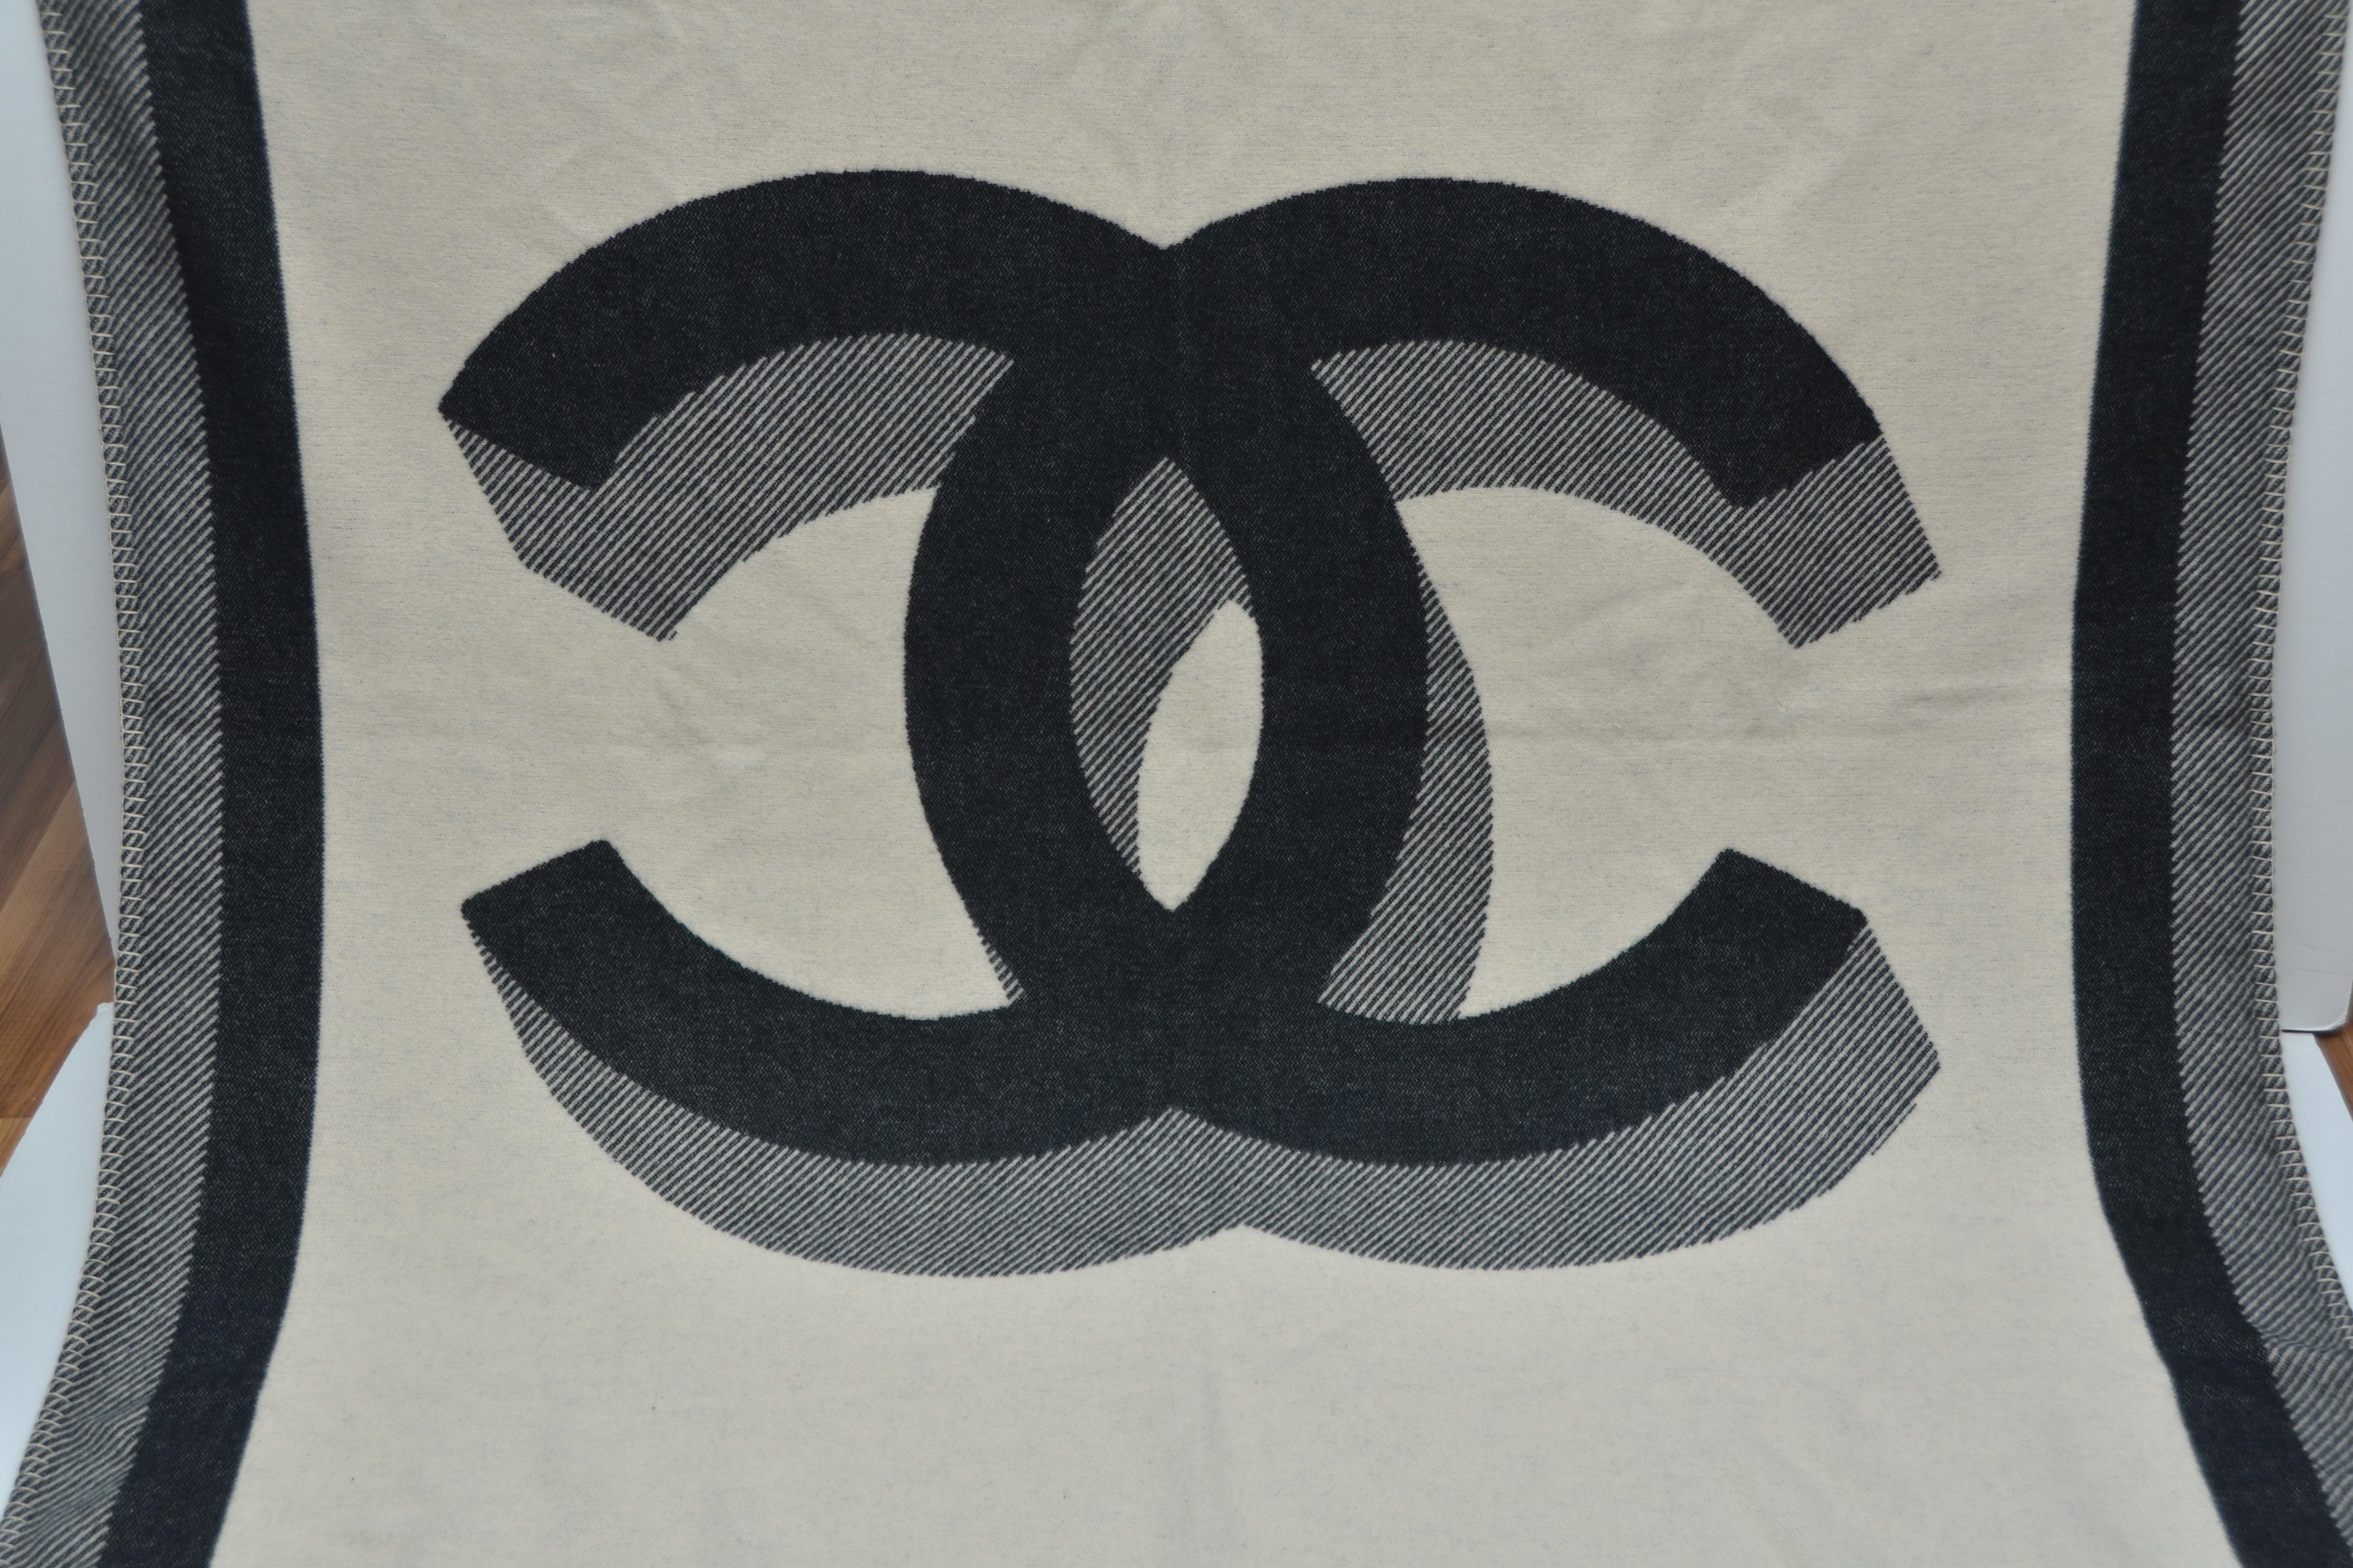 Tapis, jeté ou couverture de voyage Chanel
Neuf avec sac à poussière Chanel et étiquettes
Deux côtés différents avec un grand CC 
Mesure approximative : 74' X 55